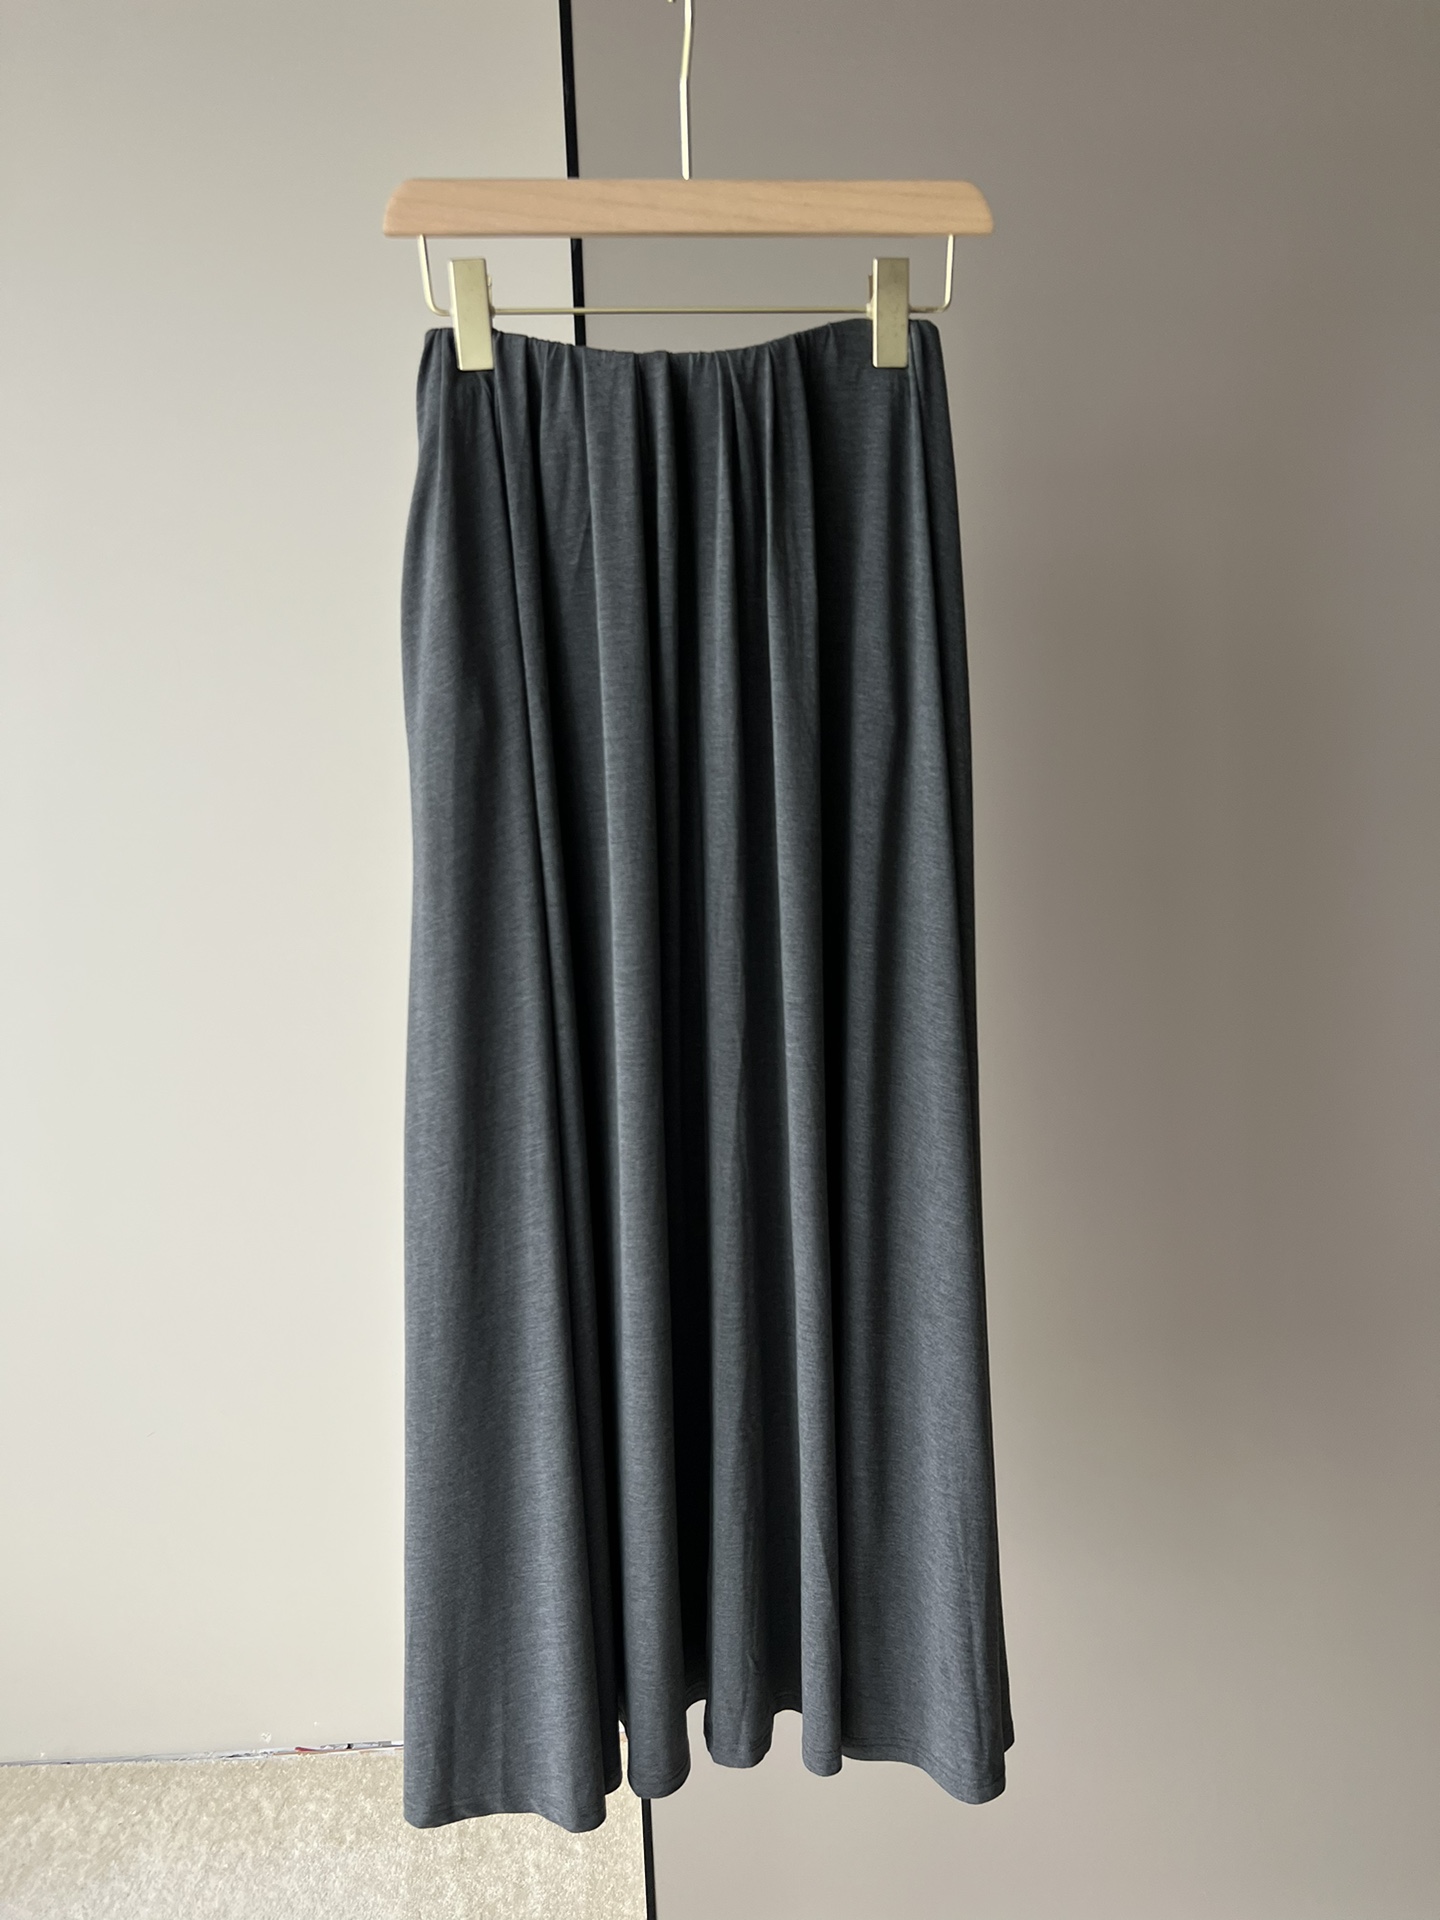 半裙是超大裙摆的用料，常规2.6米，它用了5.3米的用料